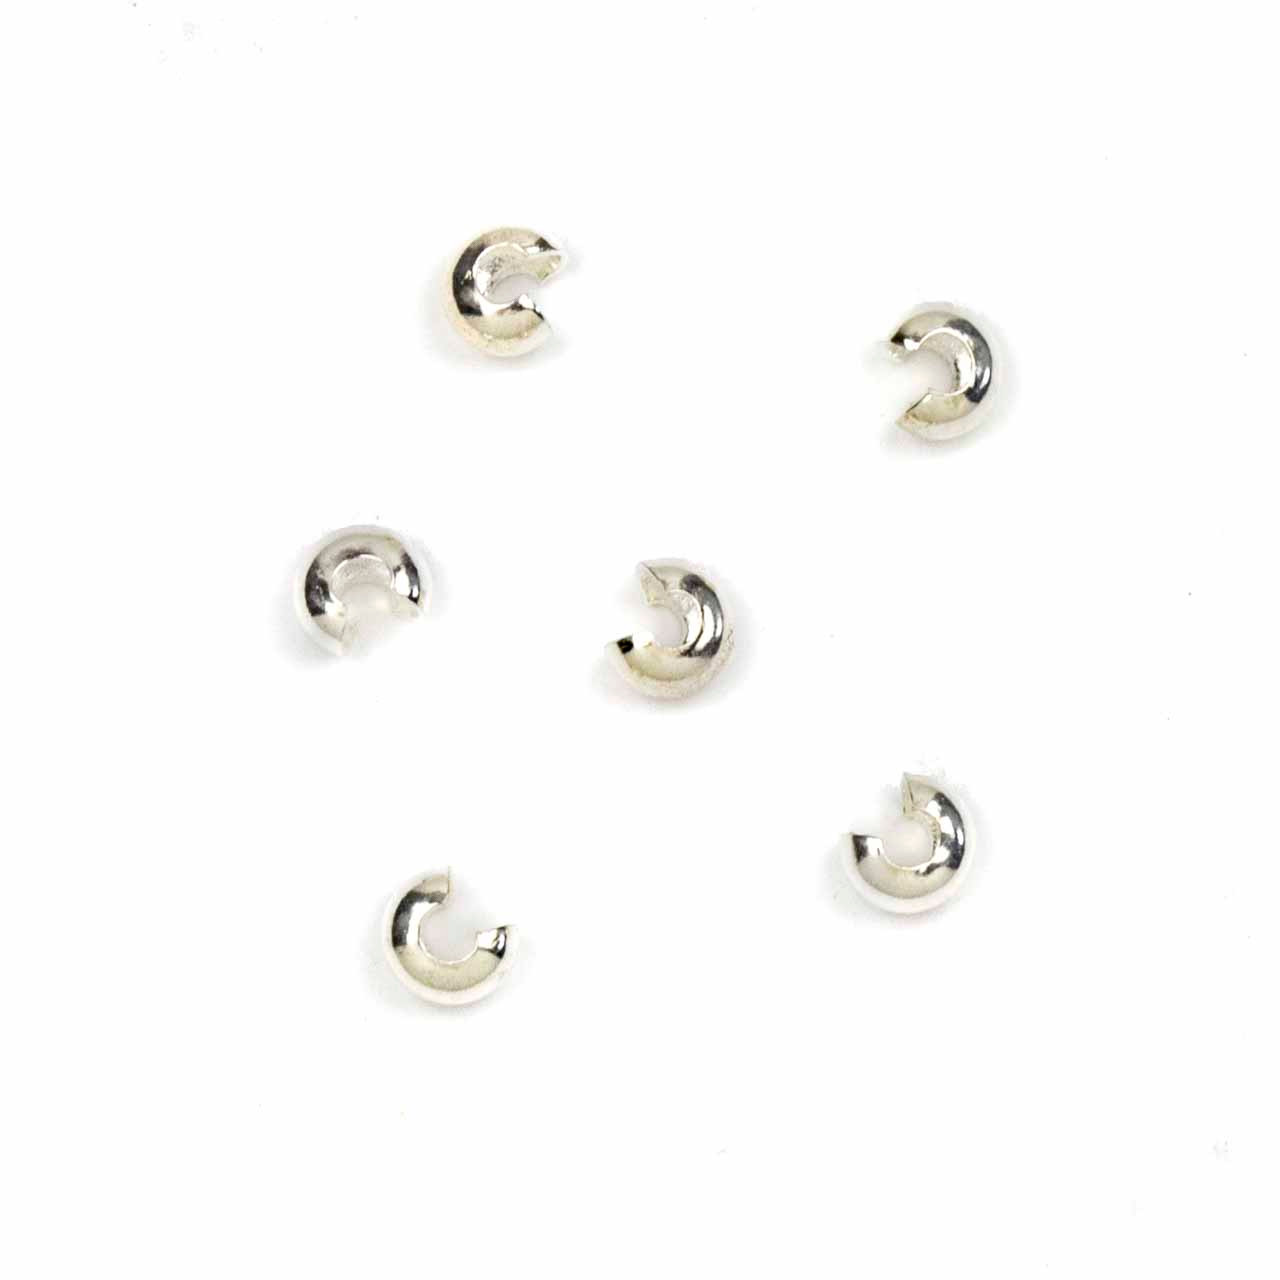 Crimp Twist Beads - Size #2 0.6 x 1.3mm 3 grams/8 pieces